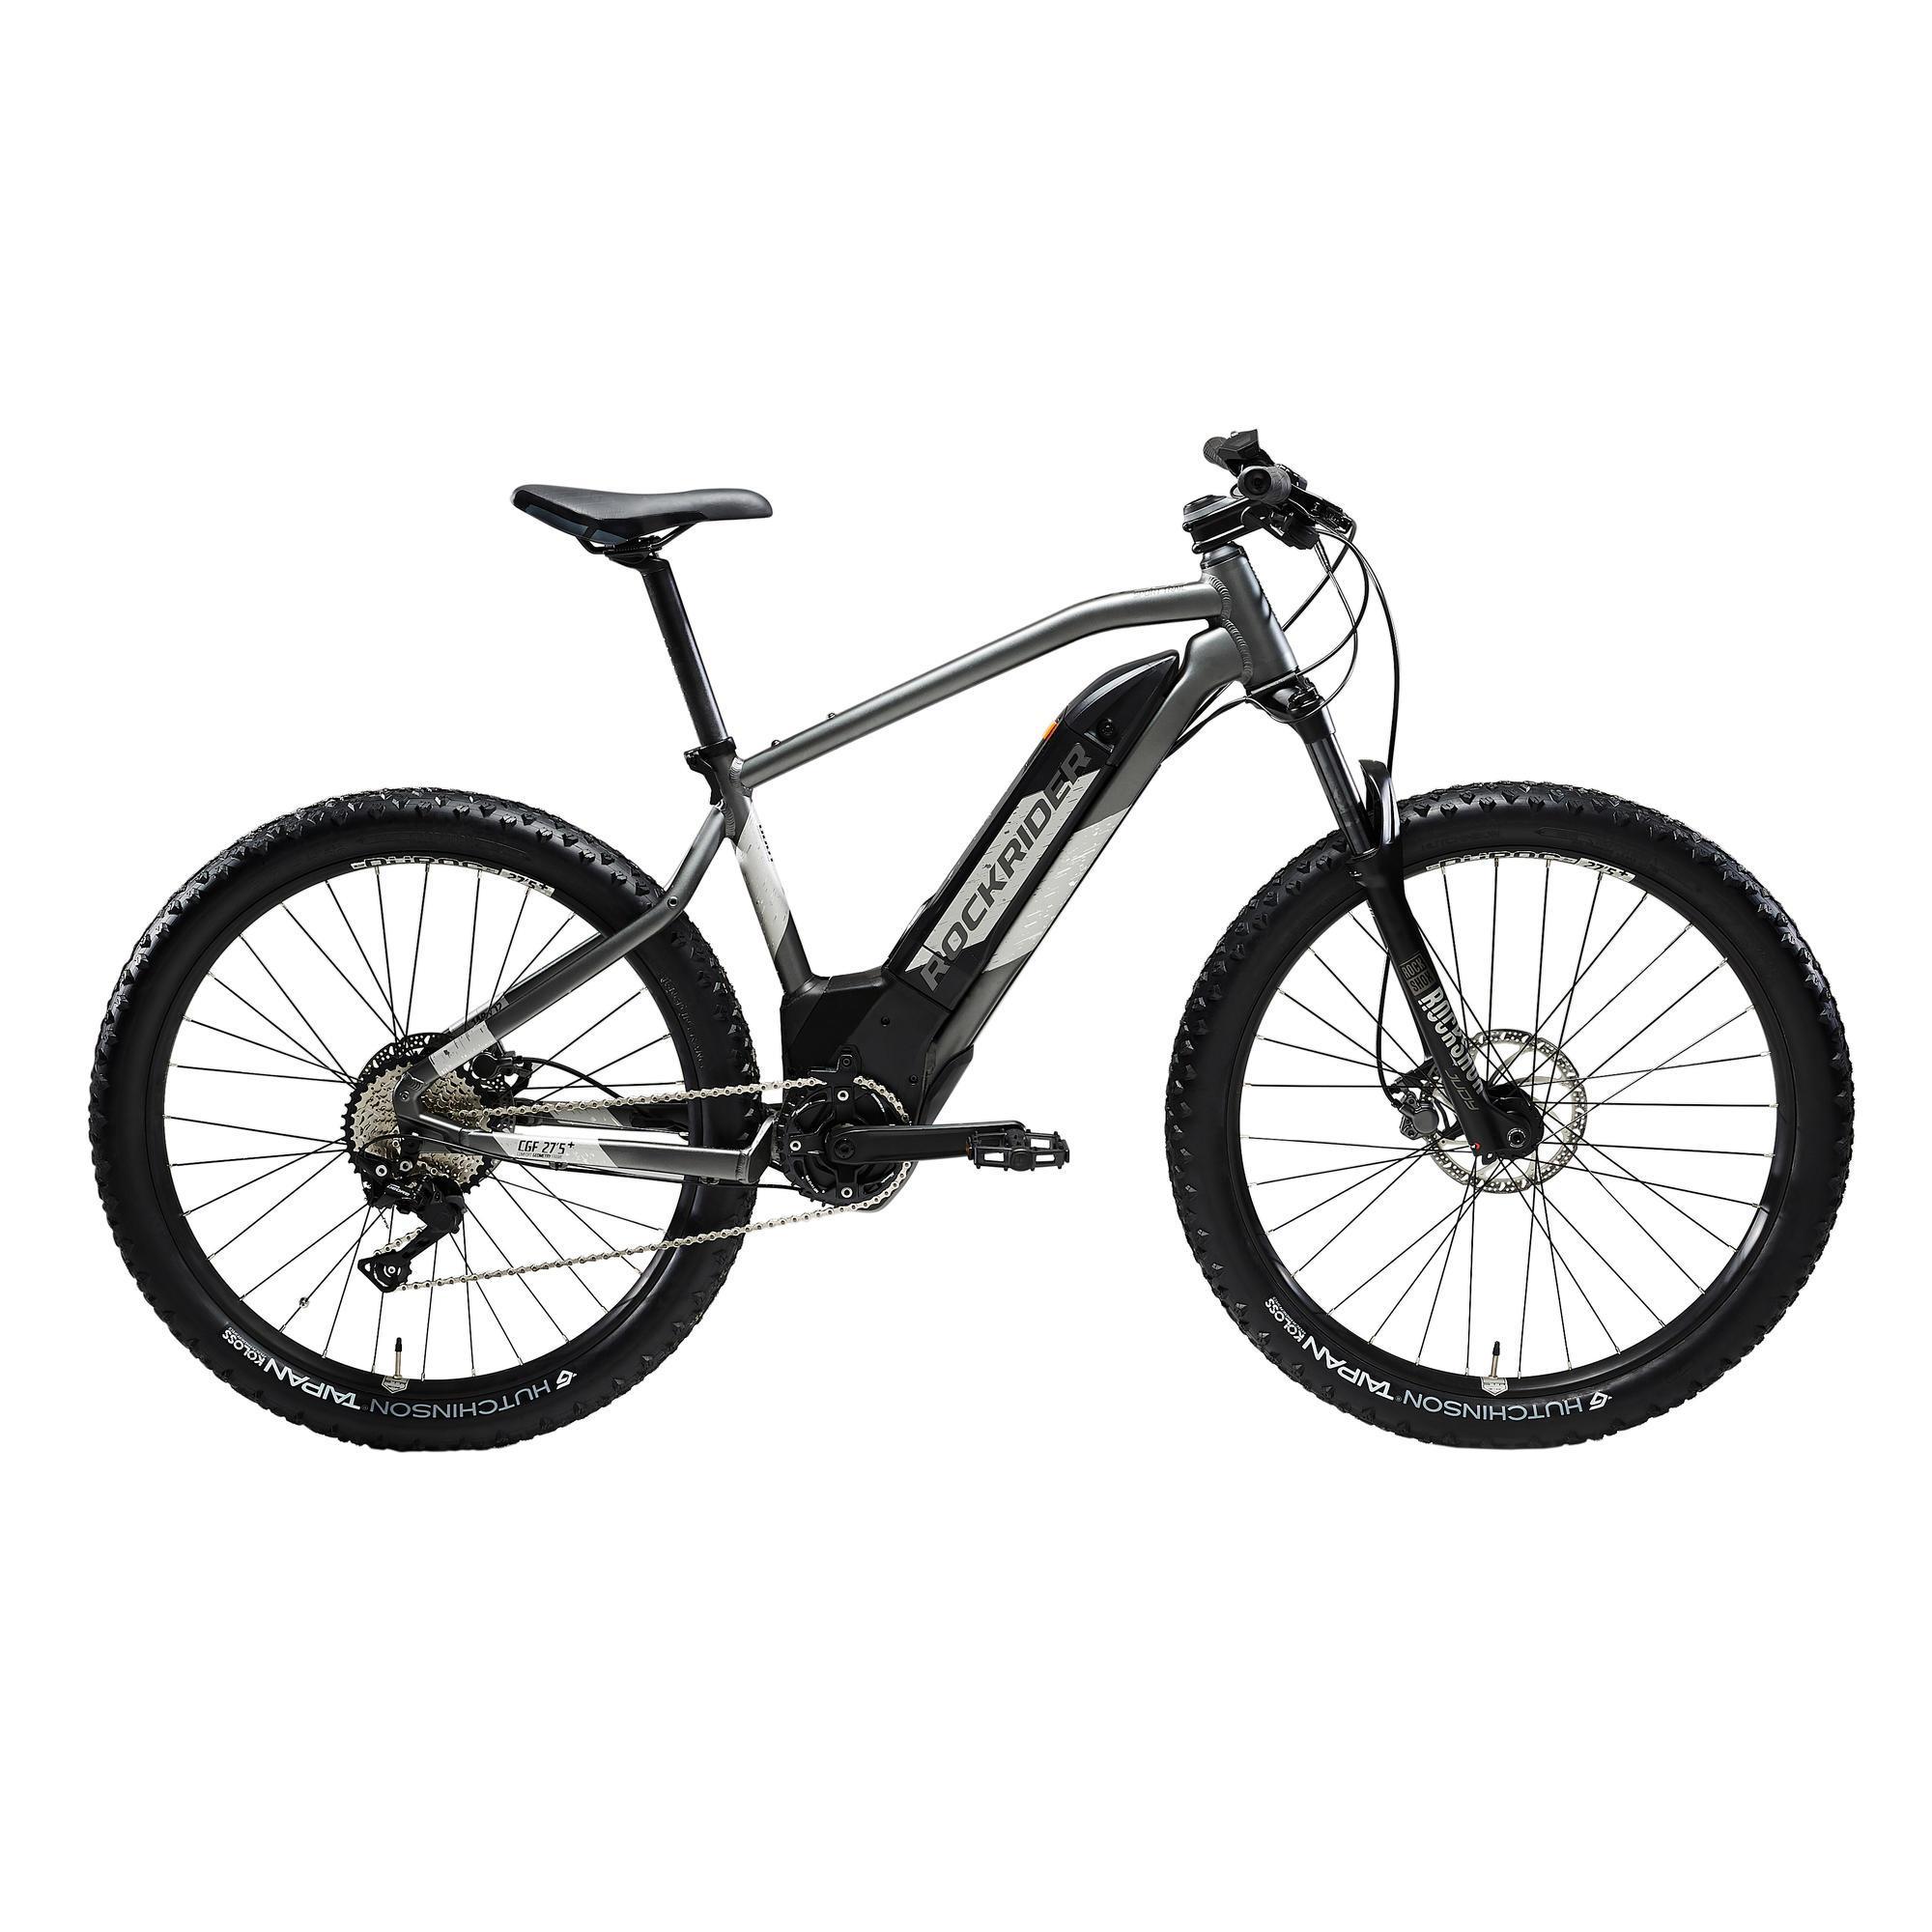 Comprar la bicicleta eléctrica de montaña Rockrider EBIKE ST 900 - Análisis, opiniones y precio